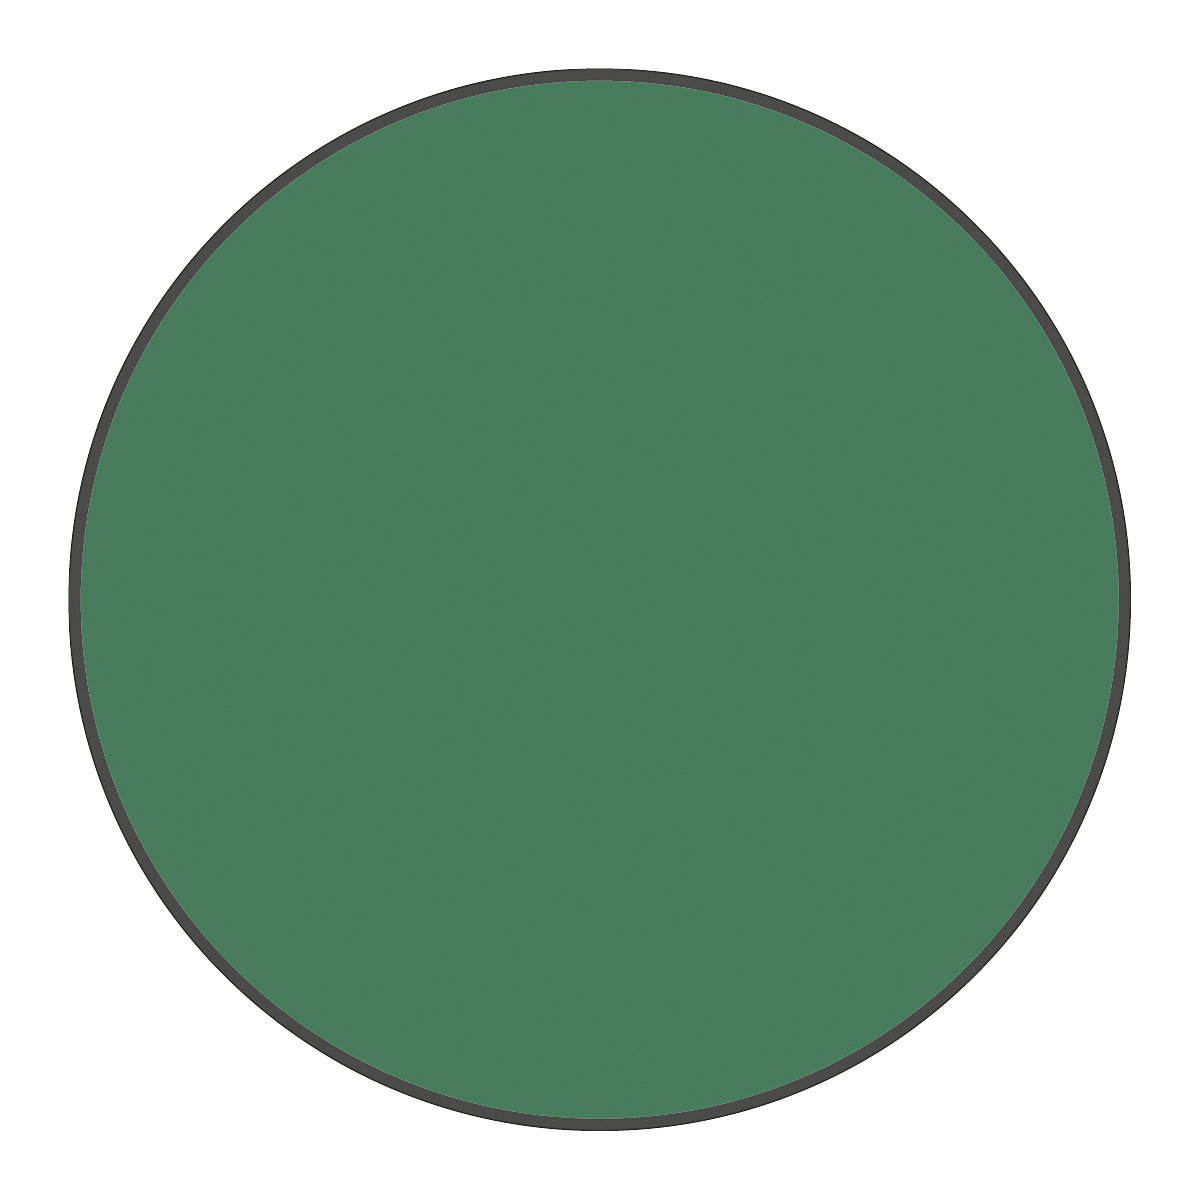 PVC padlójelölések, kör alakú, cs. e. 100 db, zöld